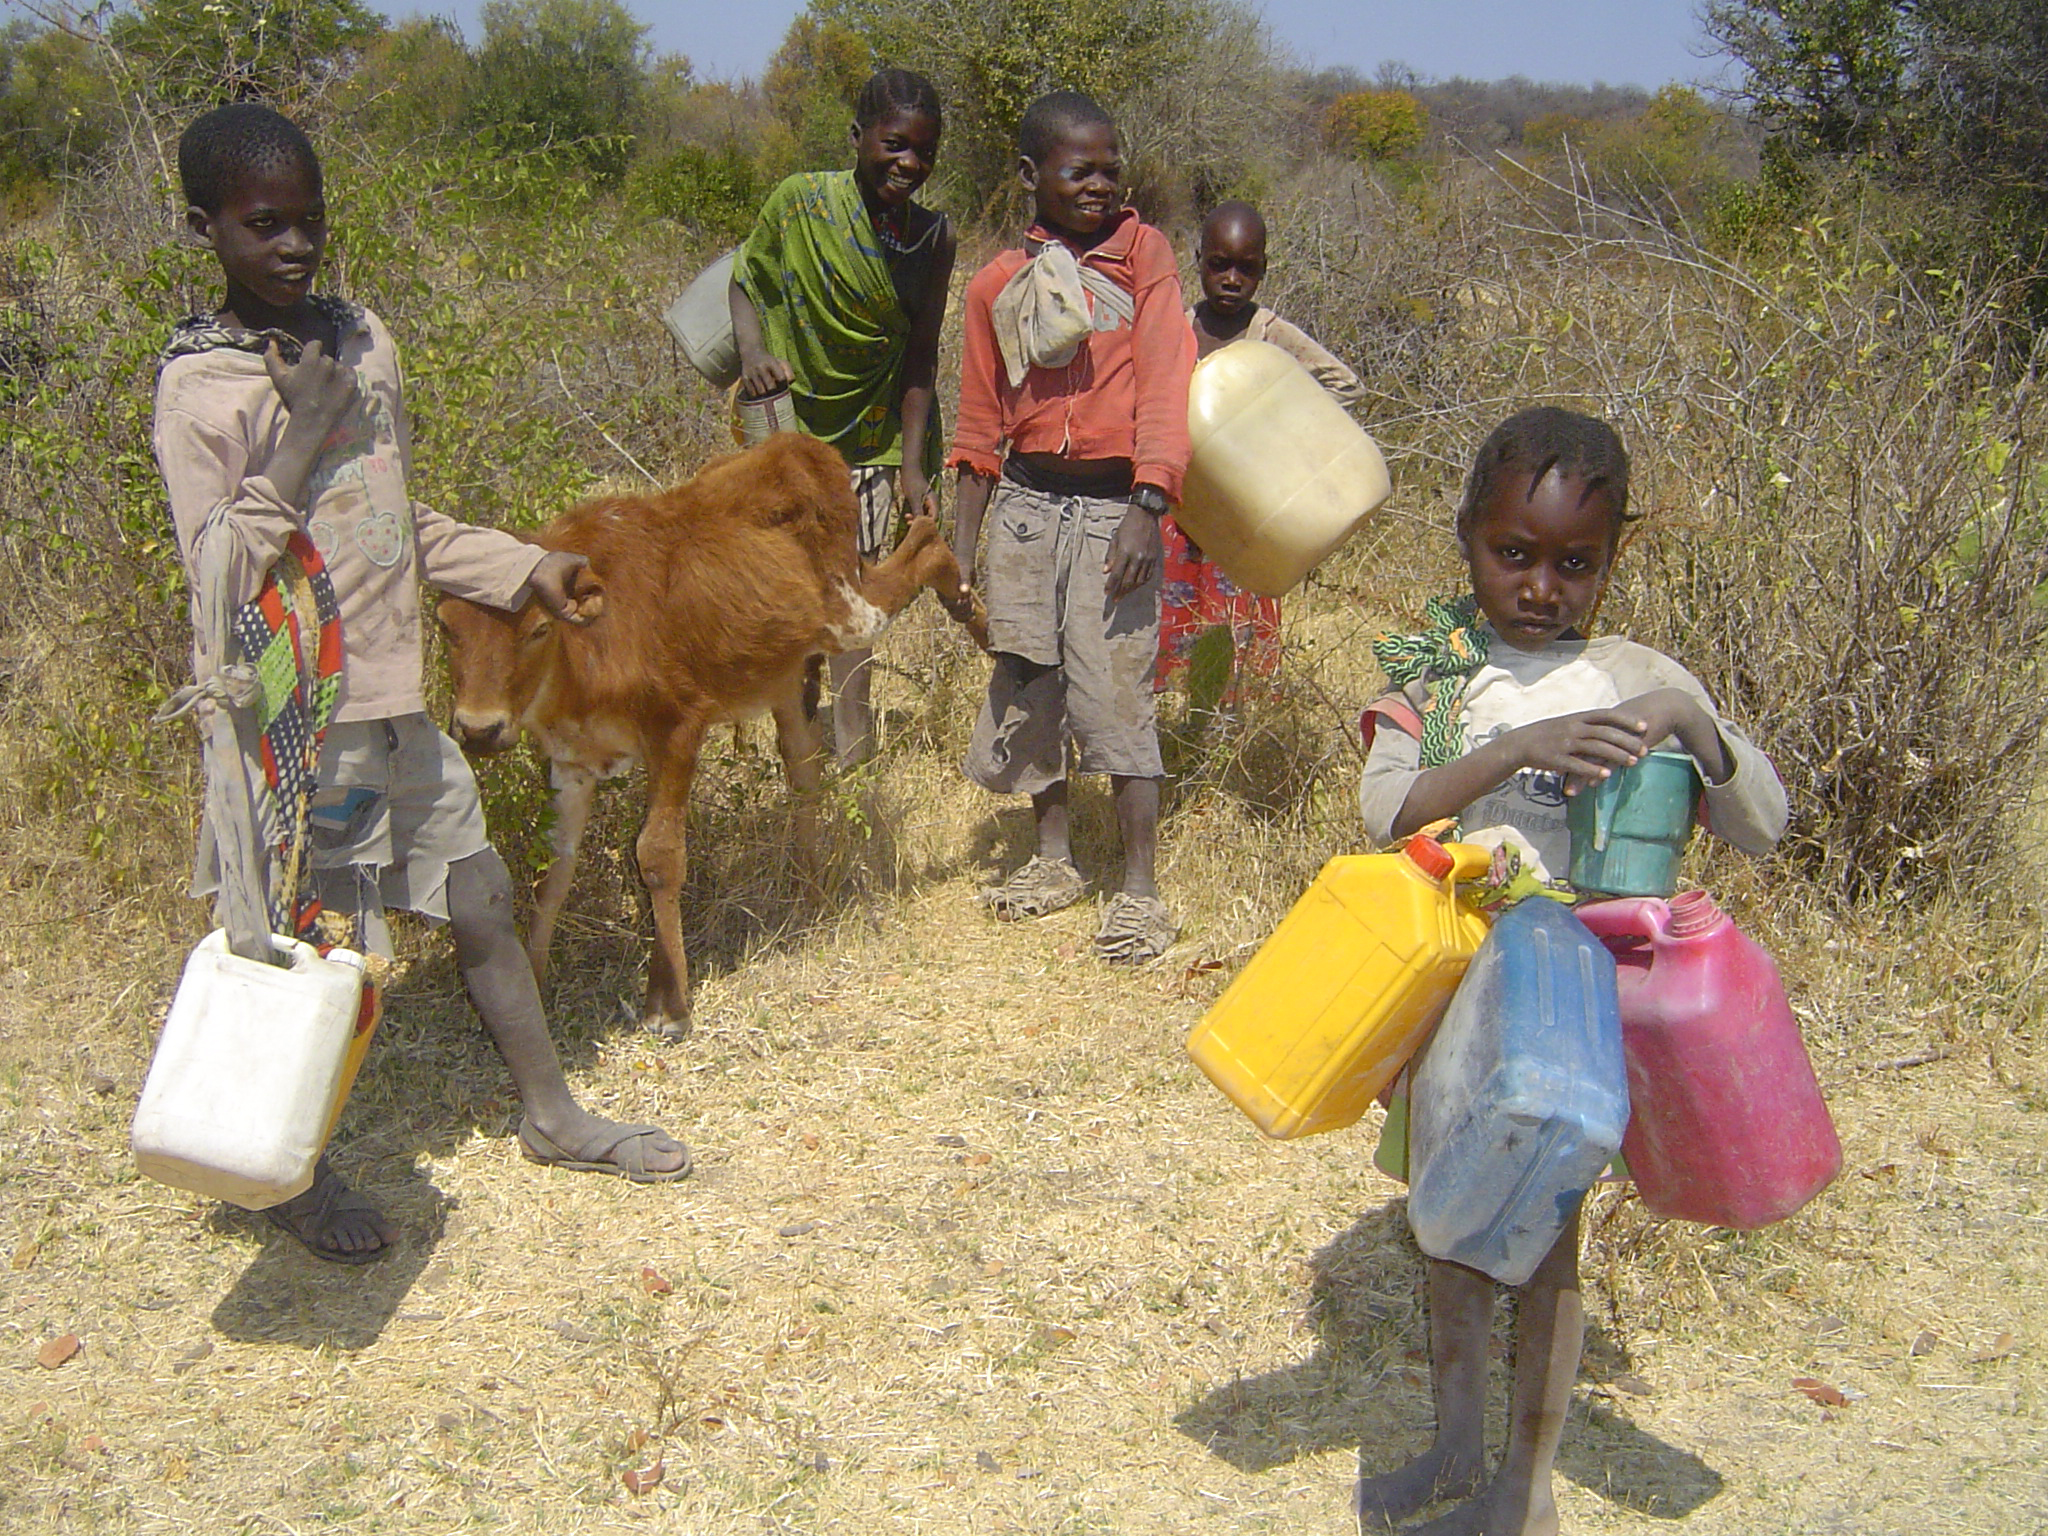 Barn i skolåldern kan inte gå i skola eftersom de behövs för att hämta vatten långt borta. Foto: Lutherska världsförbundet